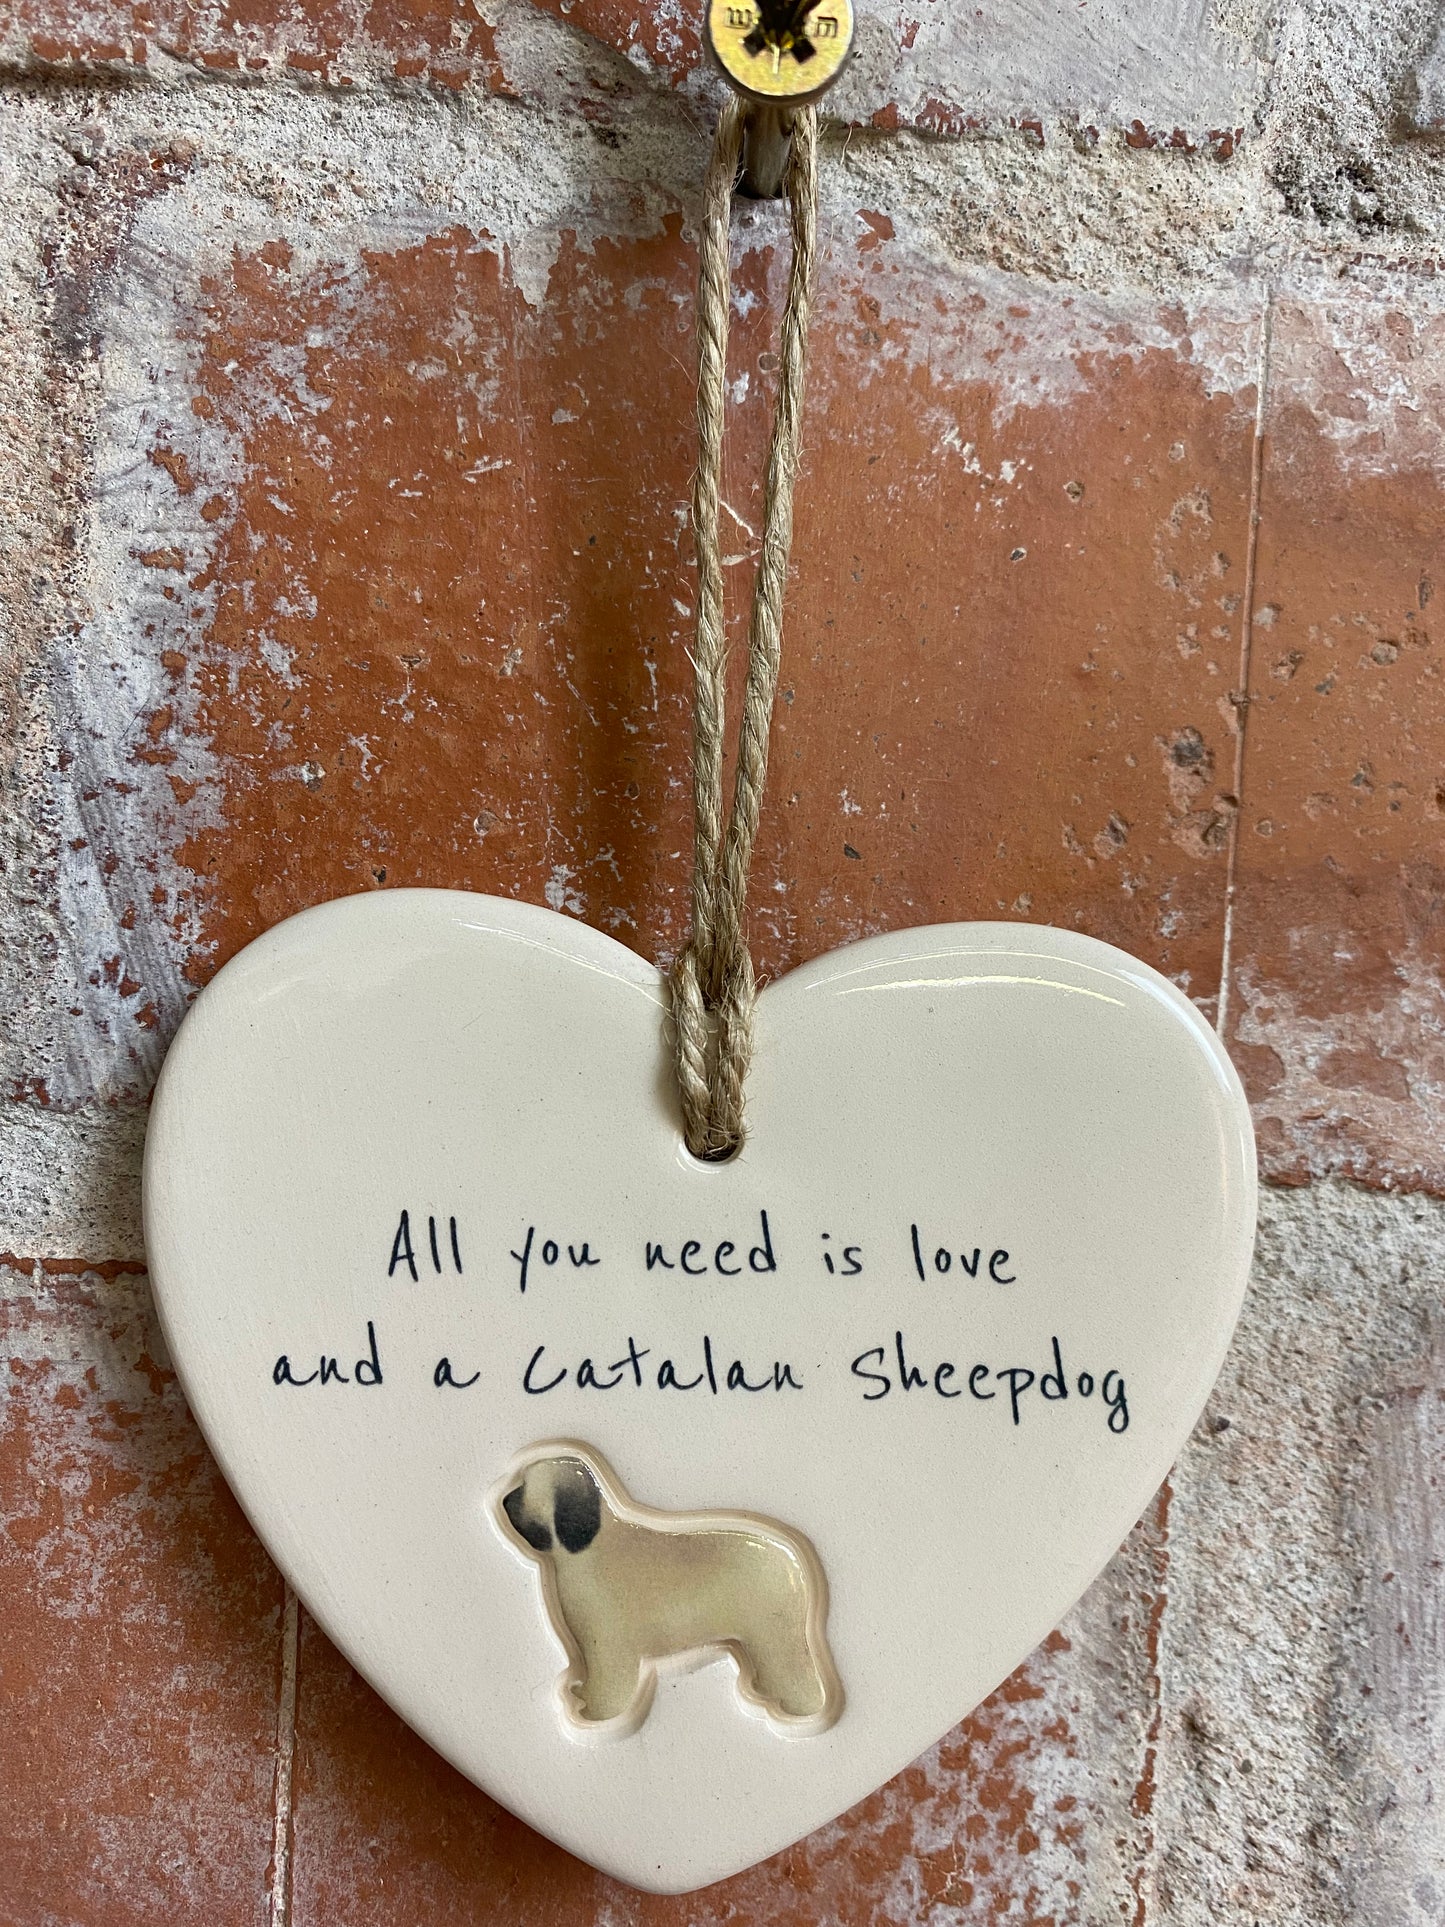 Catalan Sheepdog heart